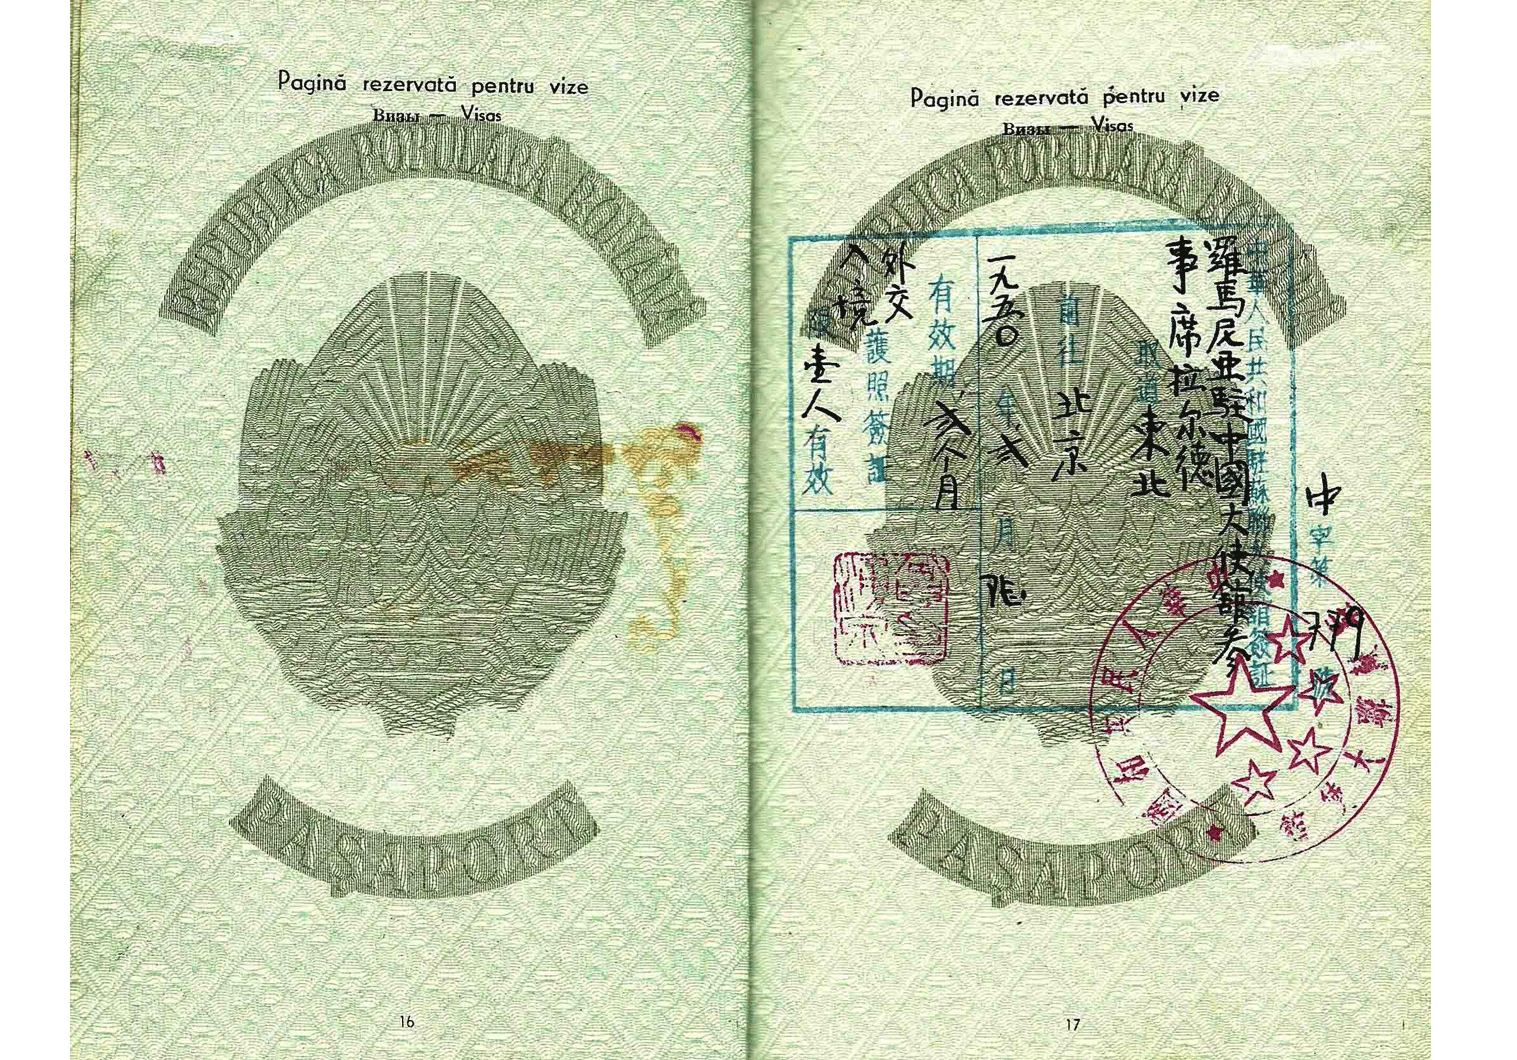 Outstanding Diplomatic passport for Beijing